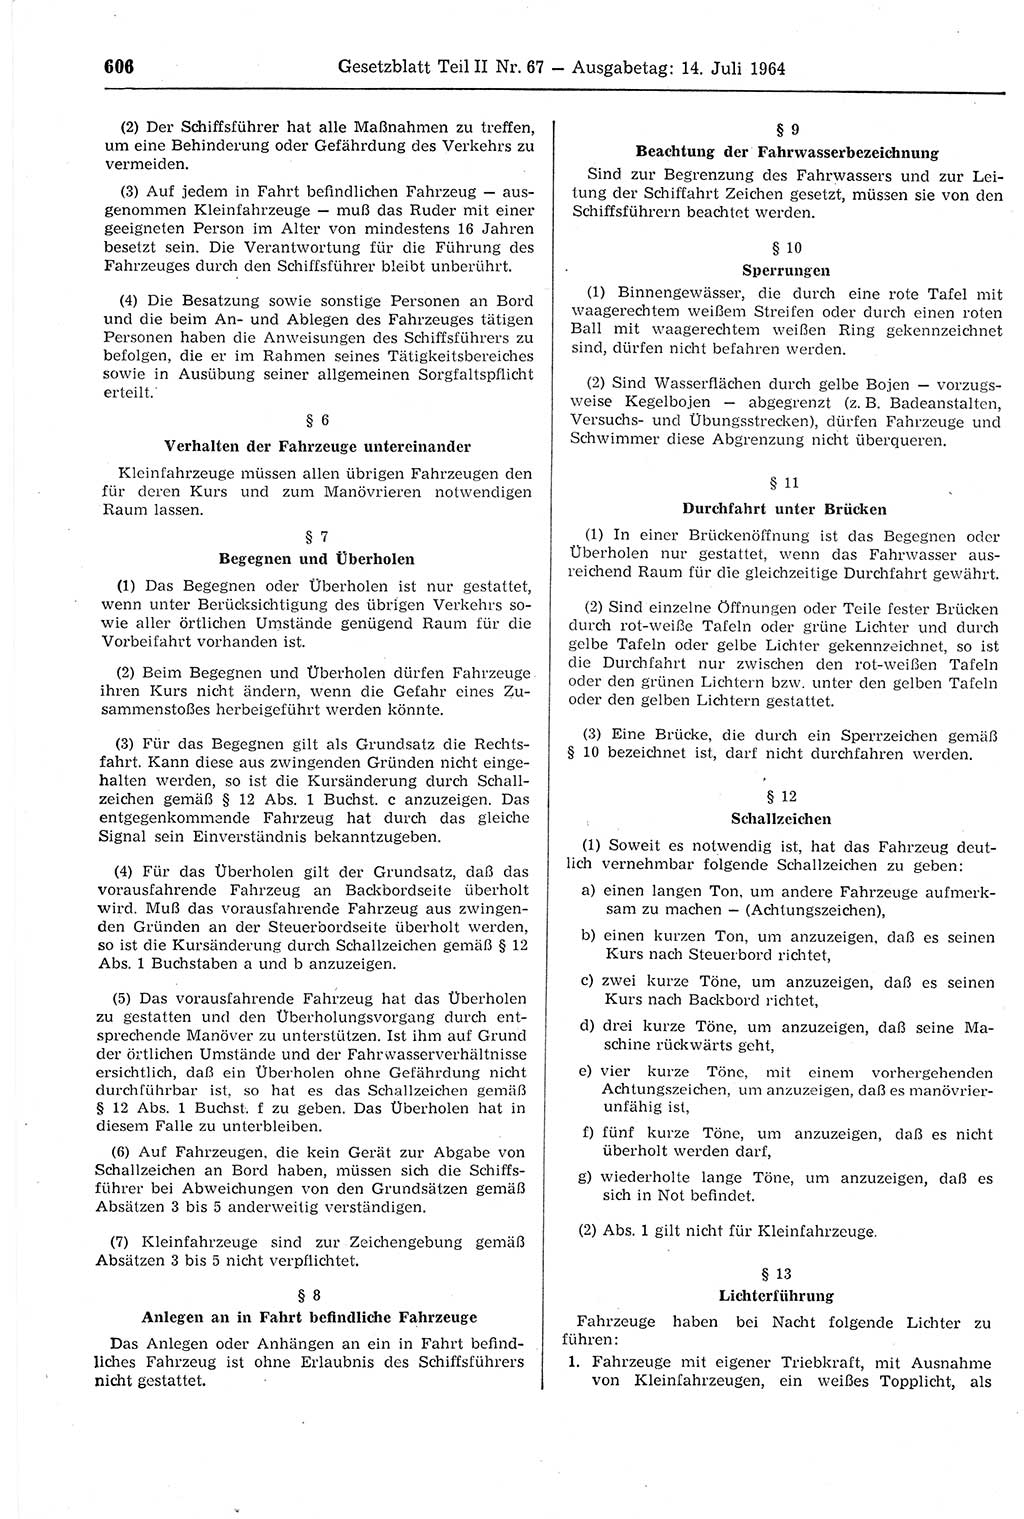 Gesetzblatt (GBl.) der Deutschen Demokratischen Republik (DDR) Teil ⅠⅠ 1964, Seite 606 (GBl. DDR ⅠⅠ 1964, S. 606)